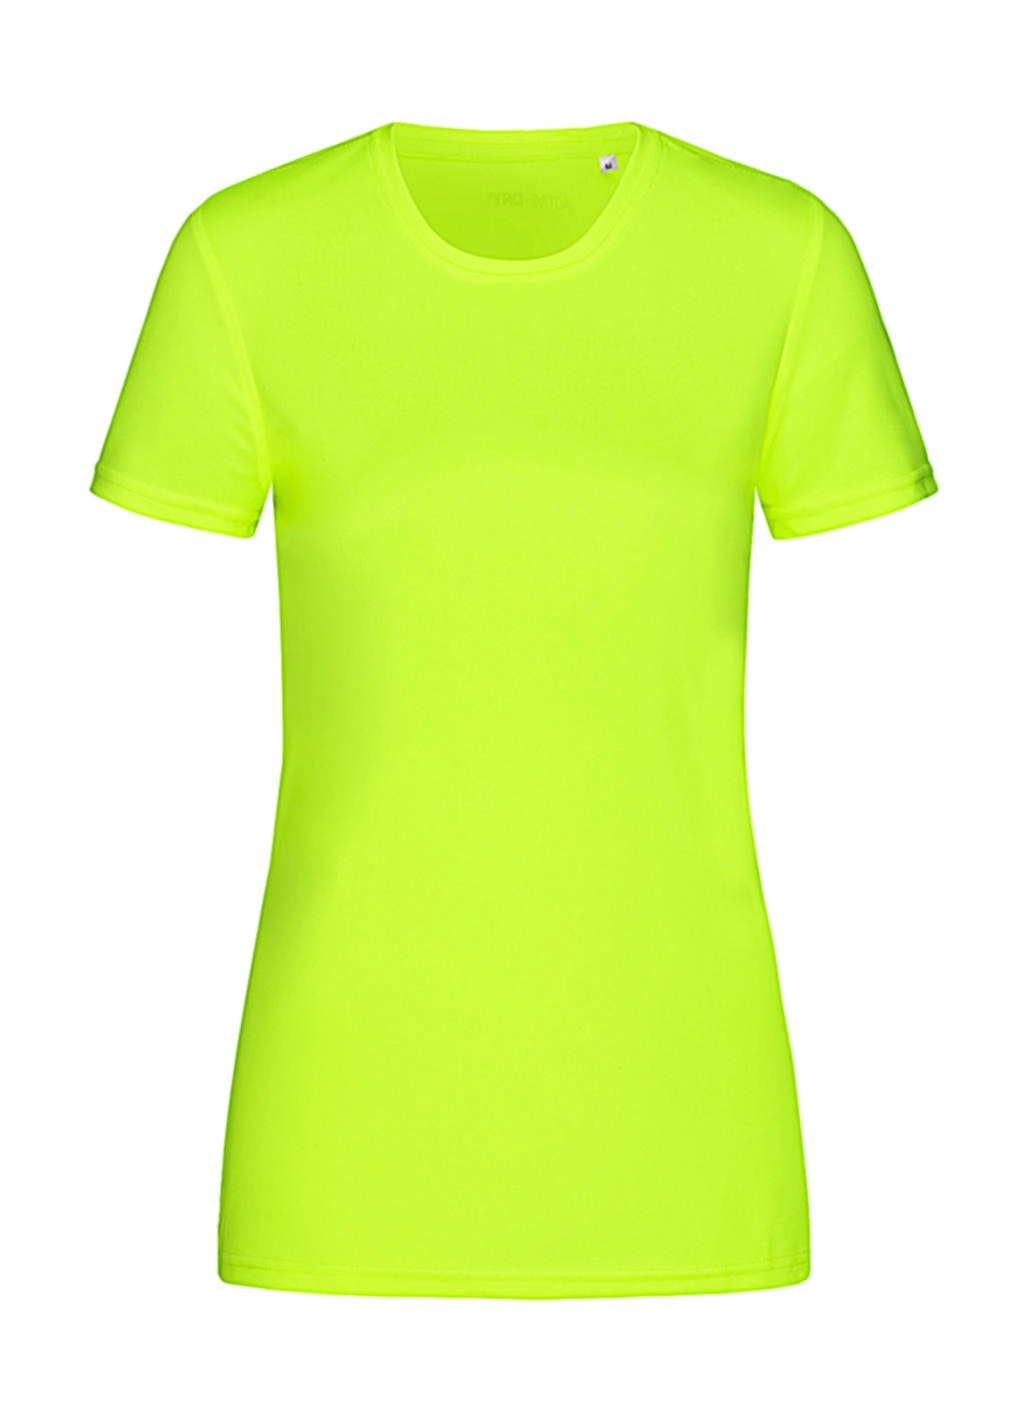 Sports-T Women zum Besticken und Bedrucken in der Farbe Cyber Yellow mit Ihren Logo, Schriftzug oder Motiv.